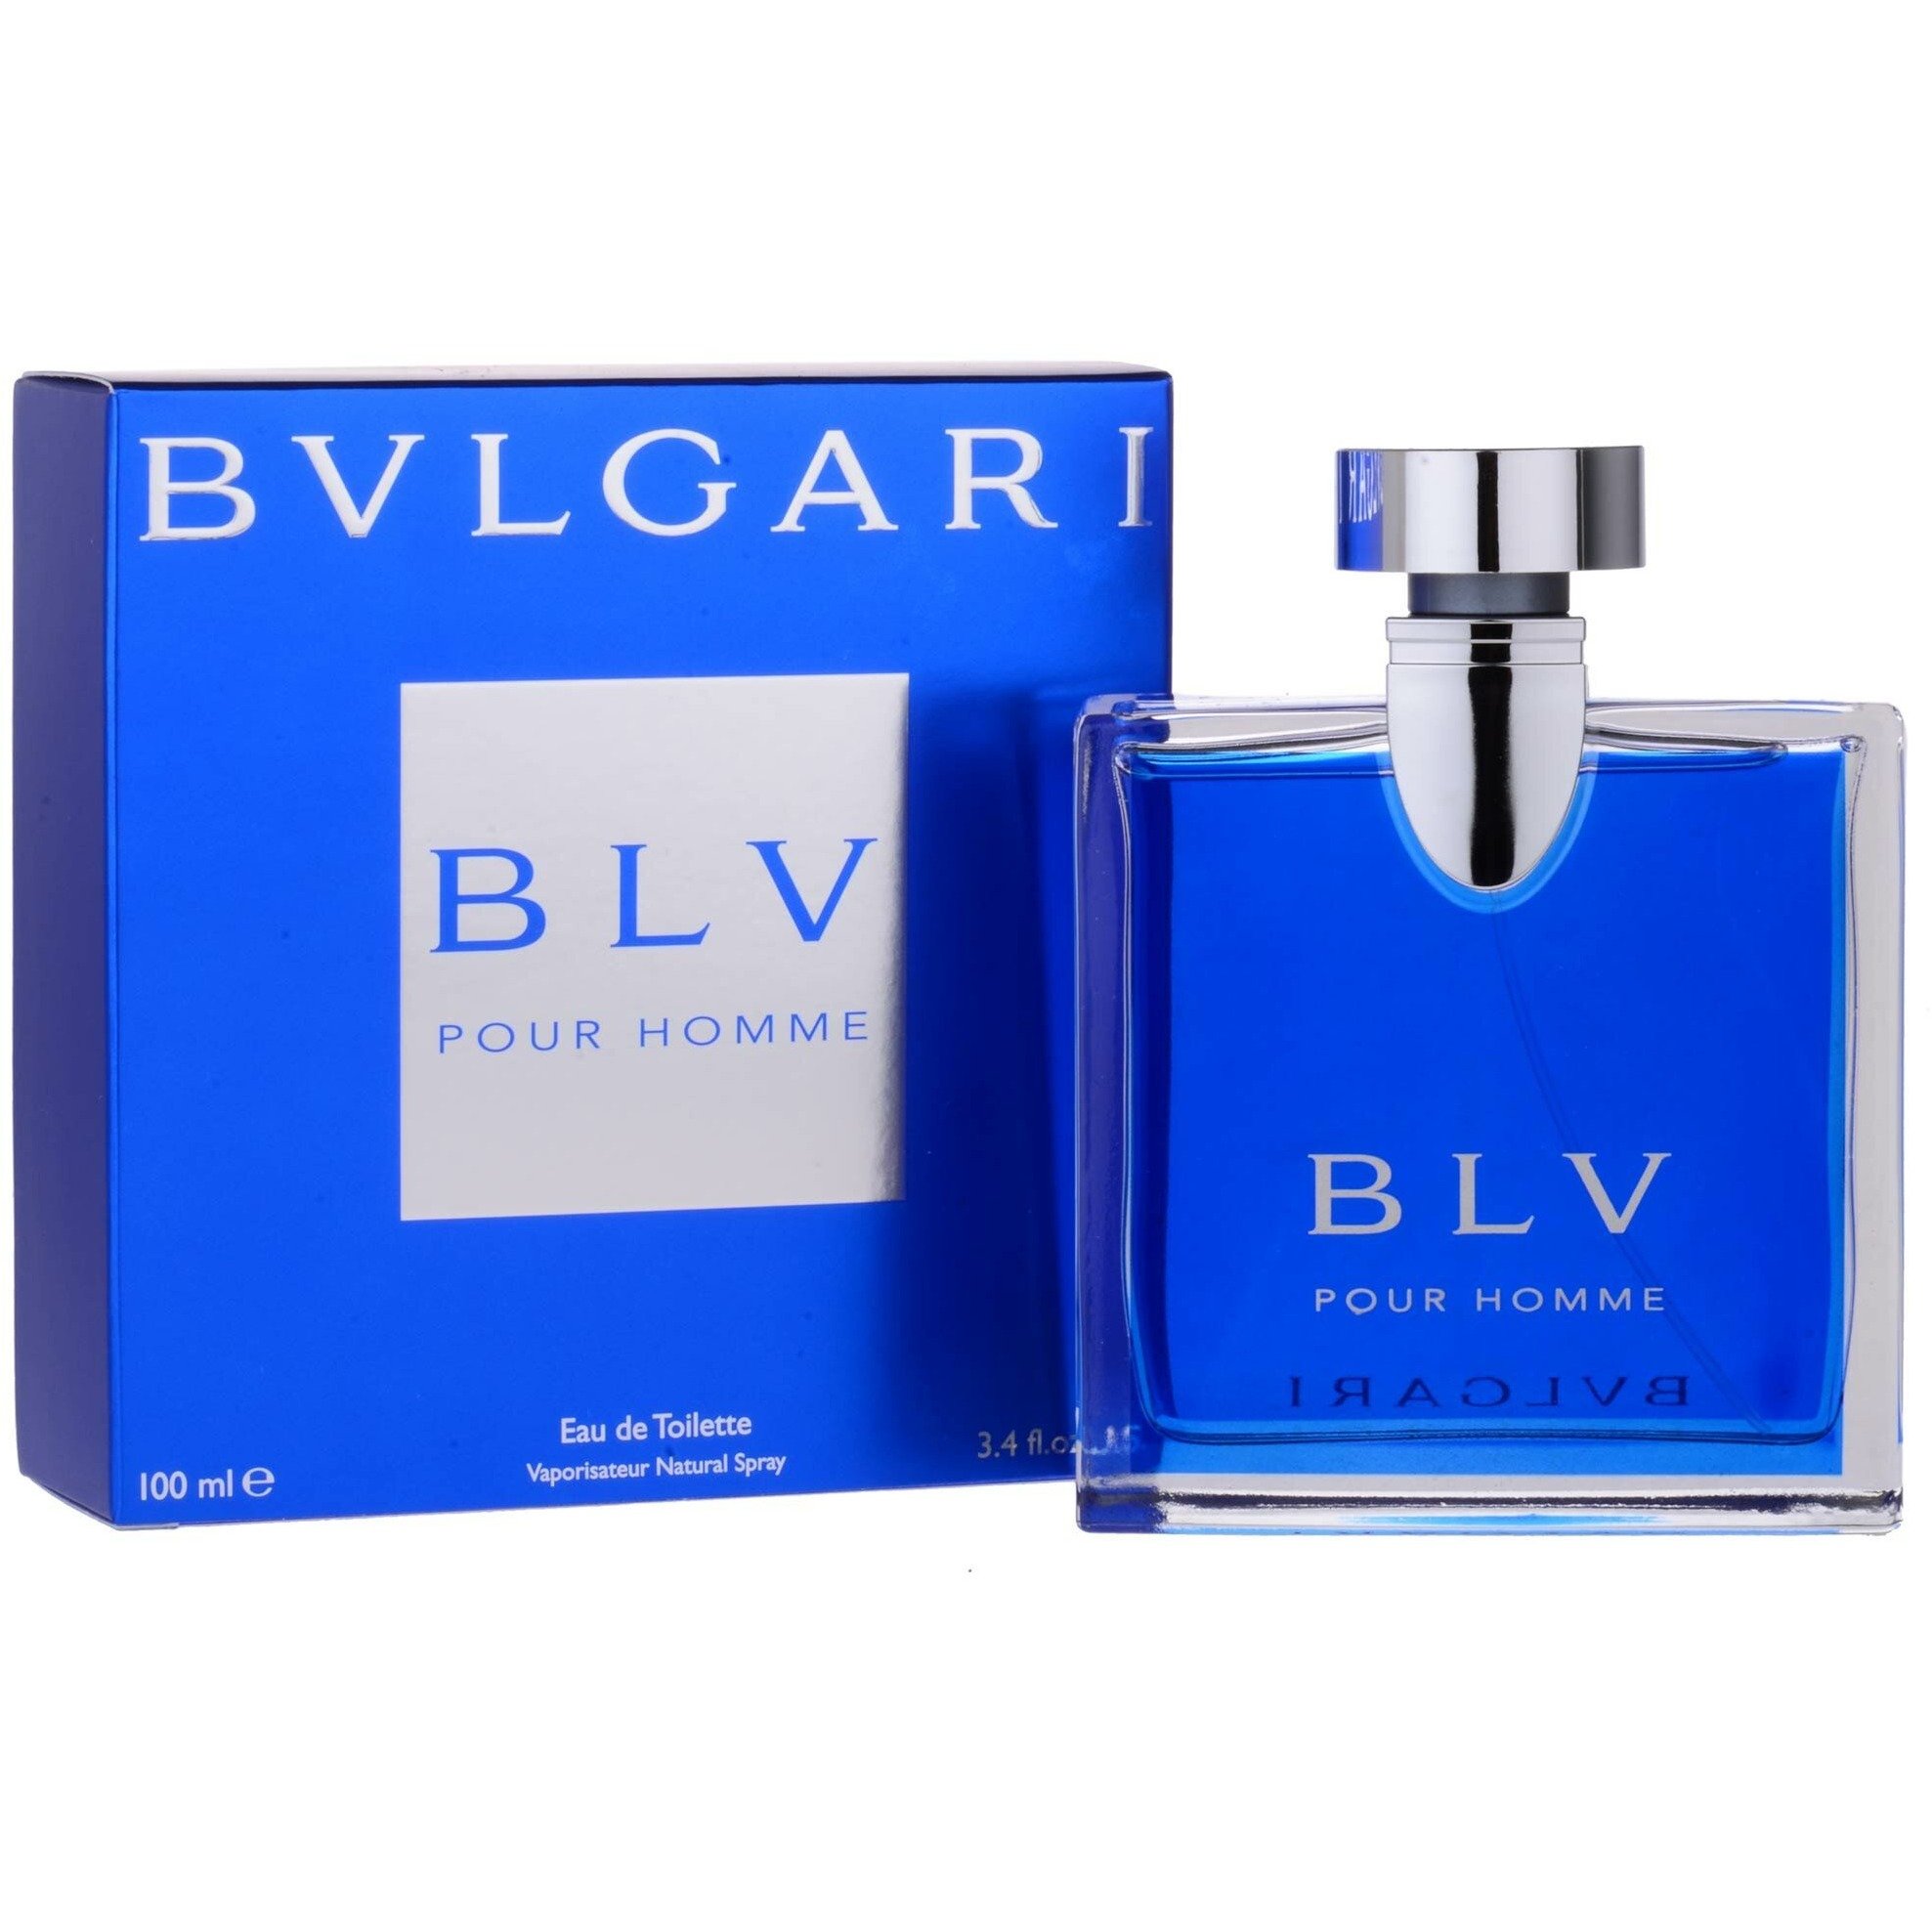 bvlgari perfume 100ml price